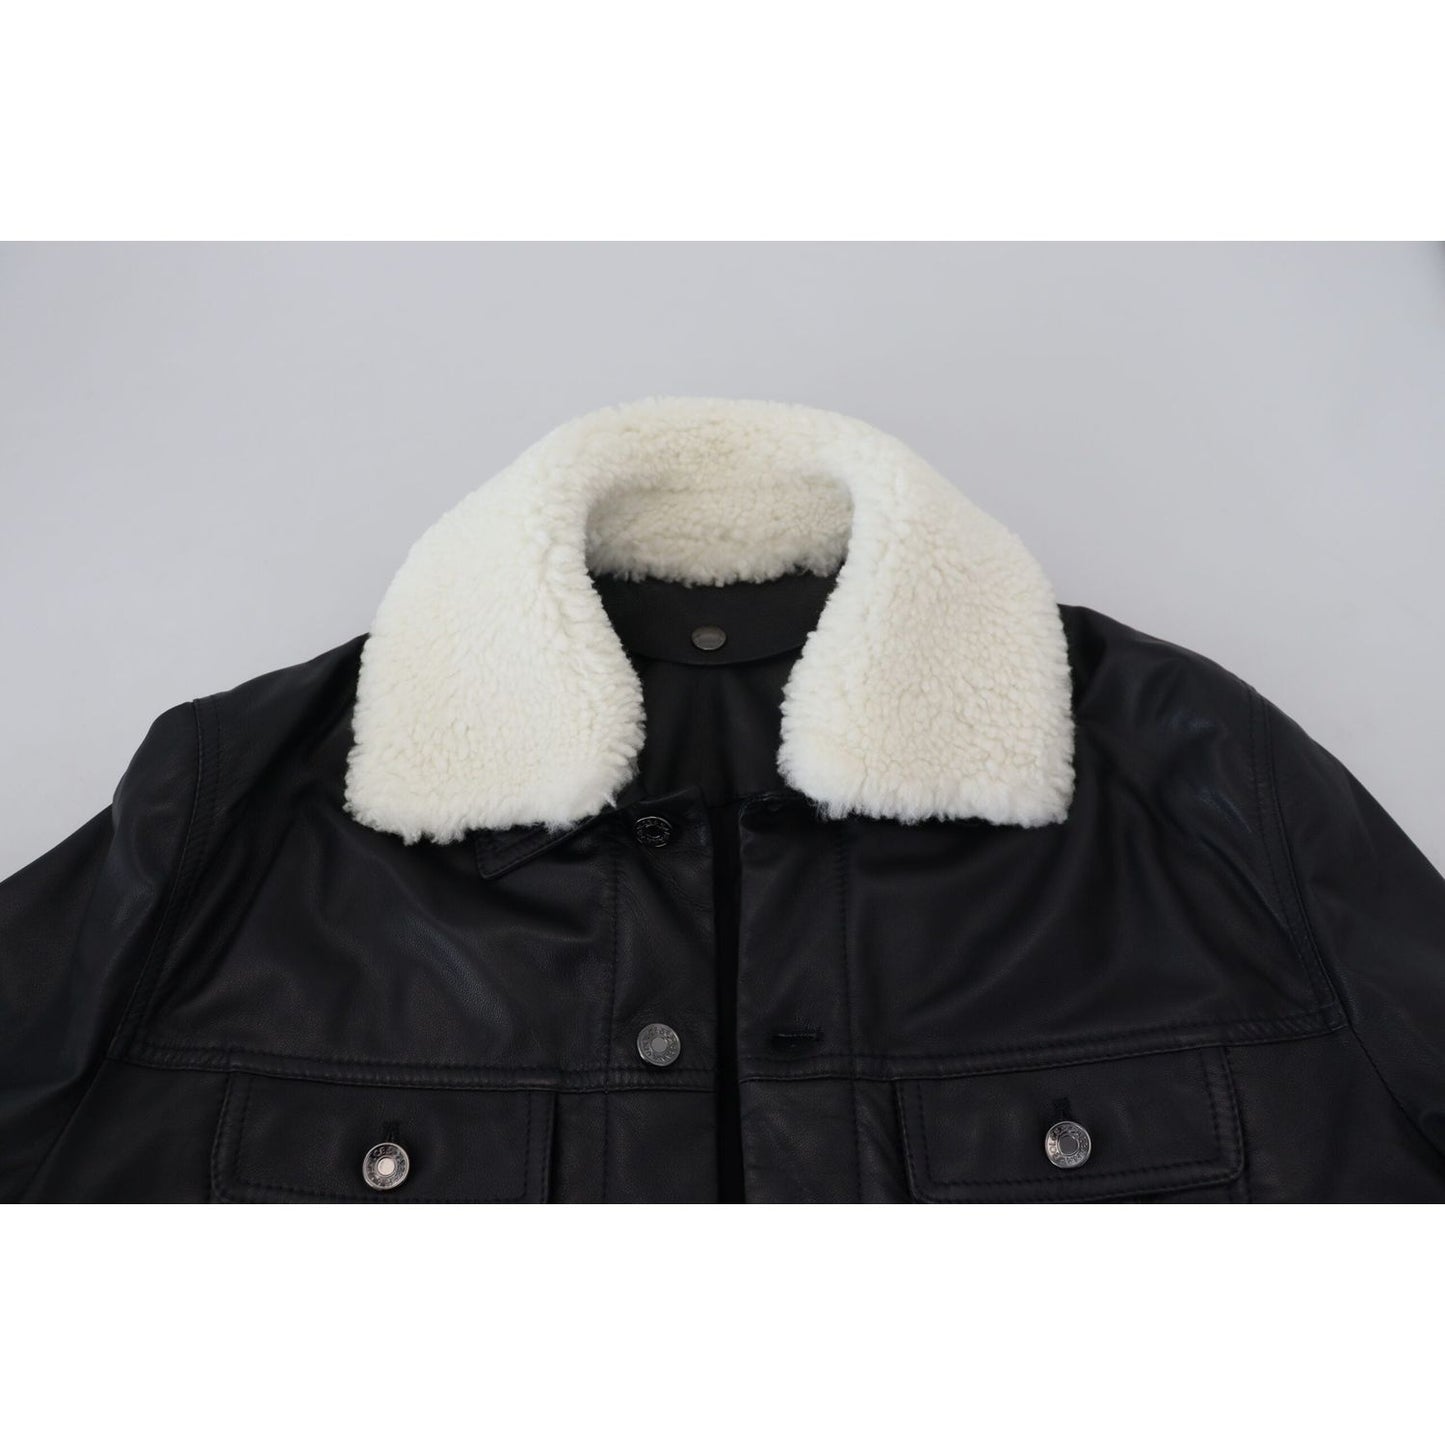 Dolce & Gabbana Elegant Black Leather Bomber Jacket black-lamb-leather-collared-men-coat-jacket-1